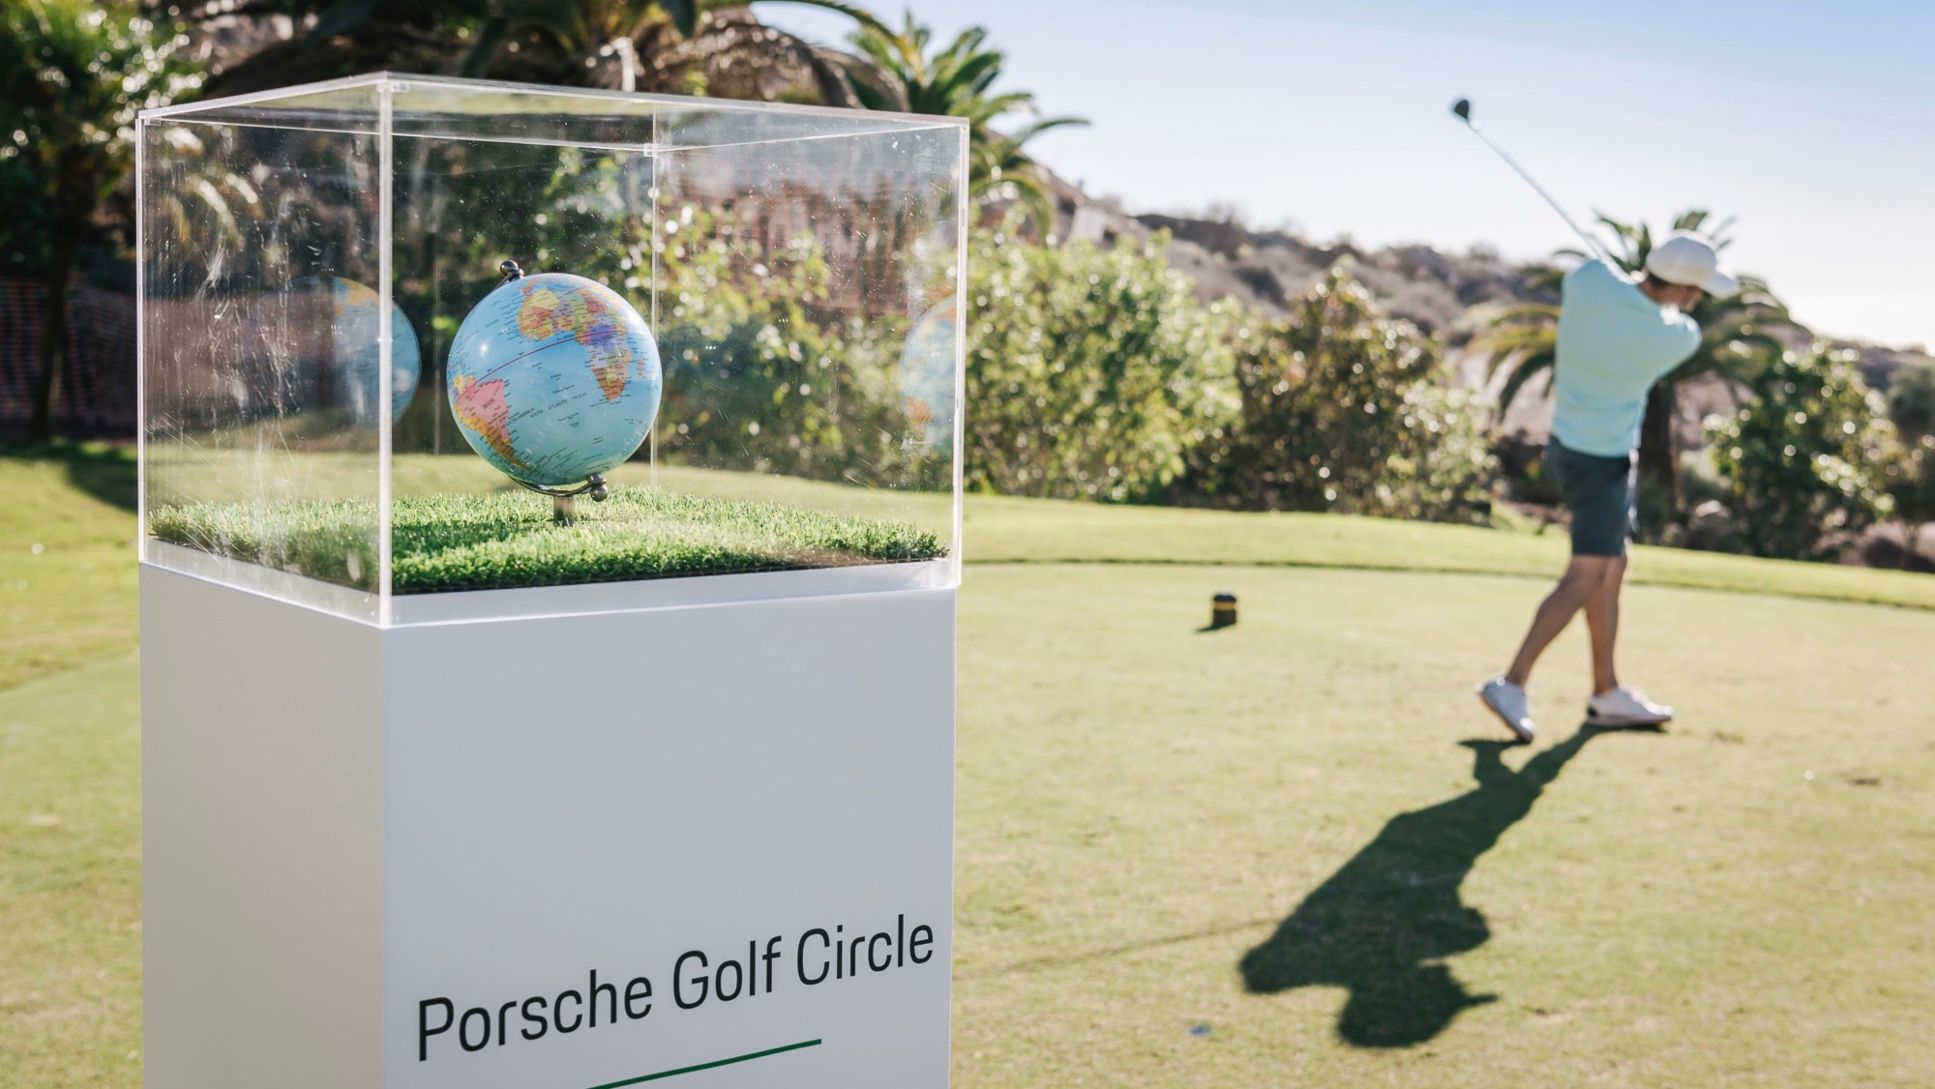 Porsche Golf Circle, Abama Golf Resort, Tenerife, 2018, Porsche AG